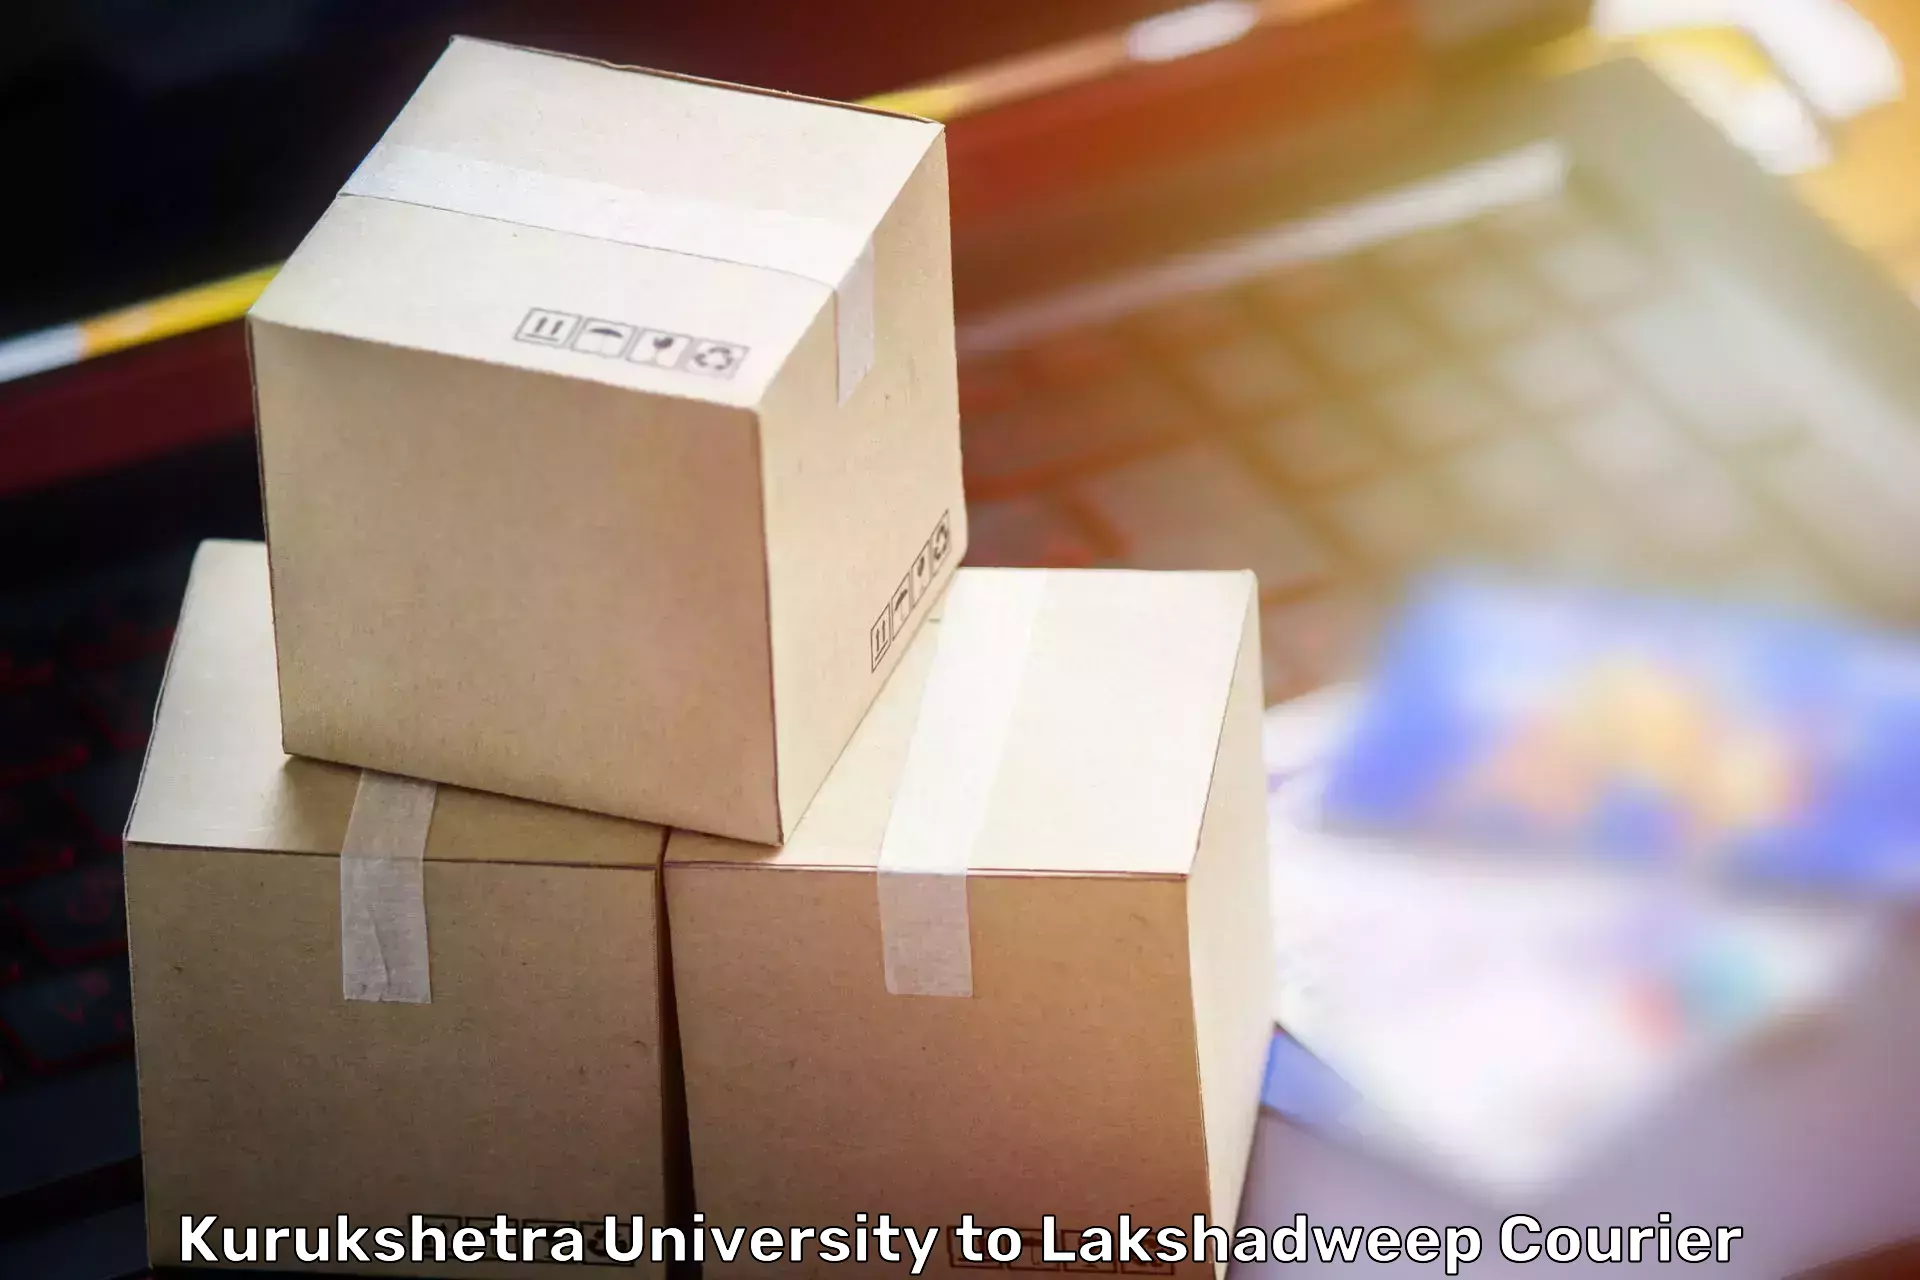 Furniture handling services Kurukshetra University to Lakshadweep